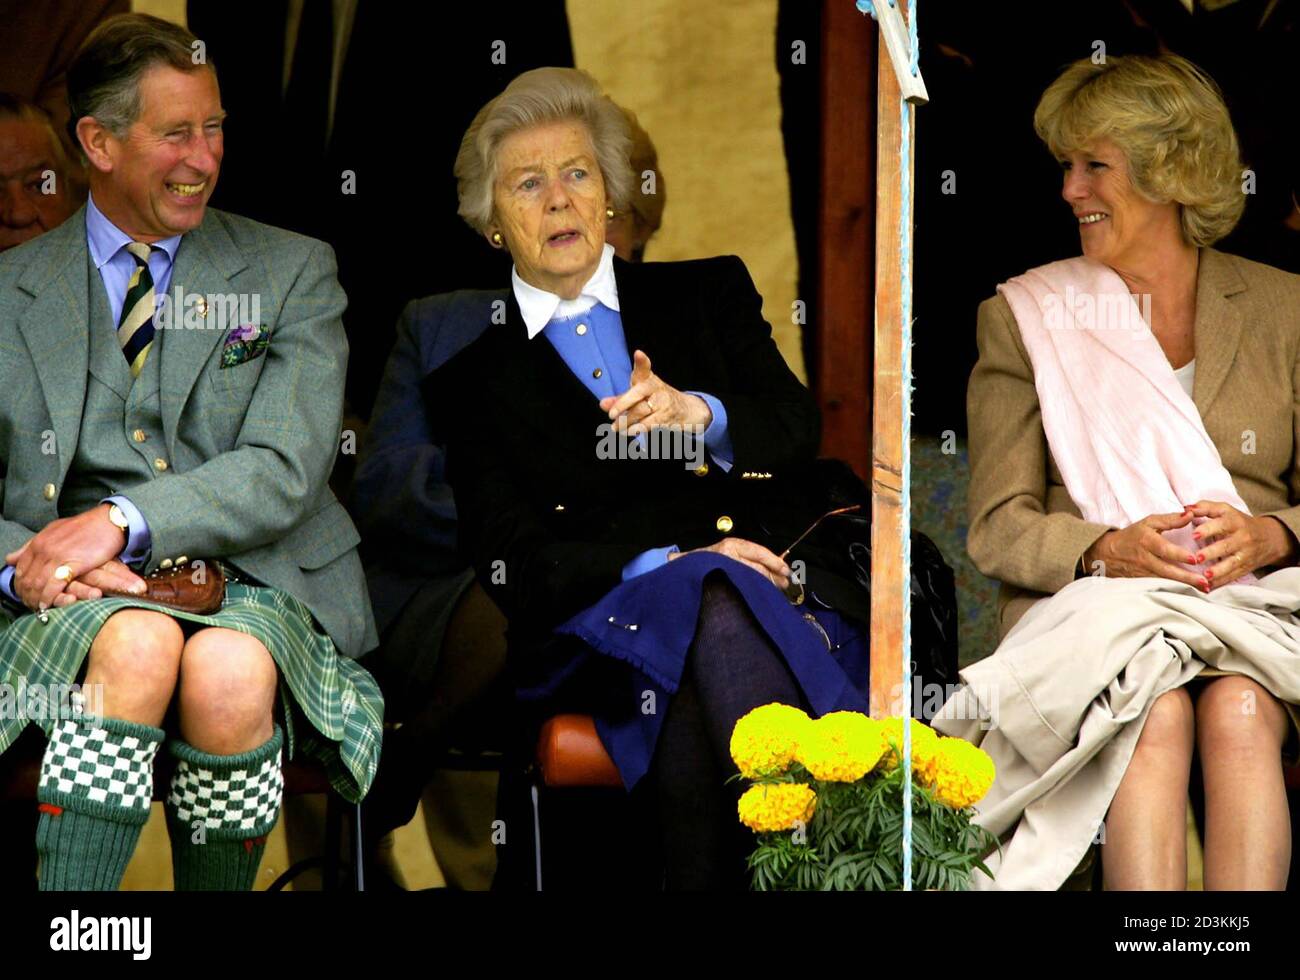 Großbritanniens Prinz Charles (L) und Camilla Parker Bowles (R) sitzen neben der Duchess of Devonshire (C), der Mey Highland Games in Schottland 10. August 2002 zu sehen. Prinz Charles ist Aufenthalt in der Burg von Mey [Sommerresidenz für seine verstorbene Großmutter, Queen Elizabeth, die Königinmutter.] Stockfoto